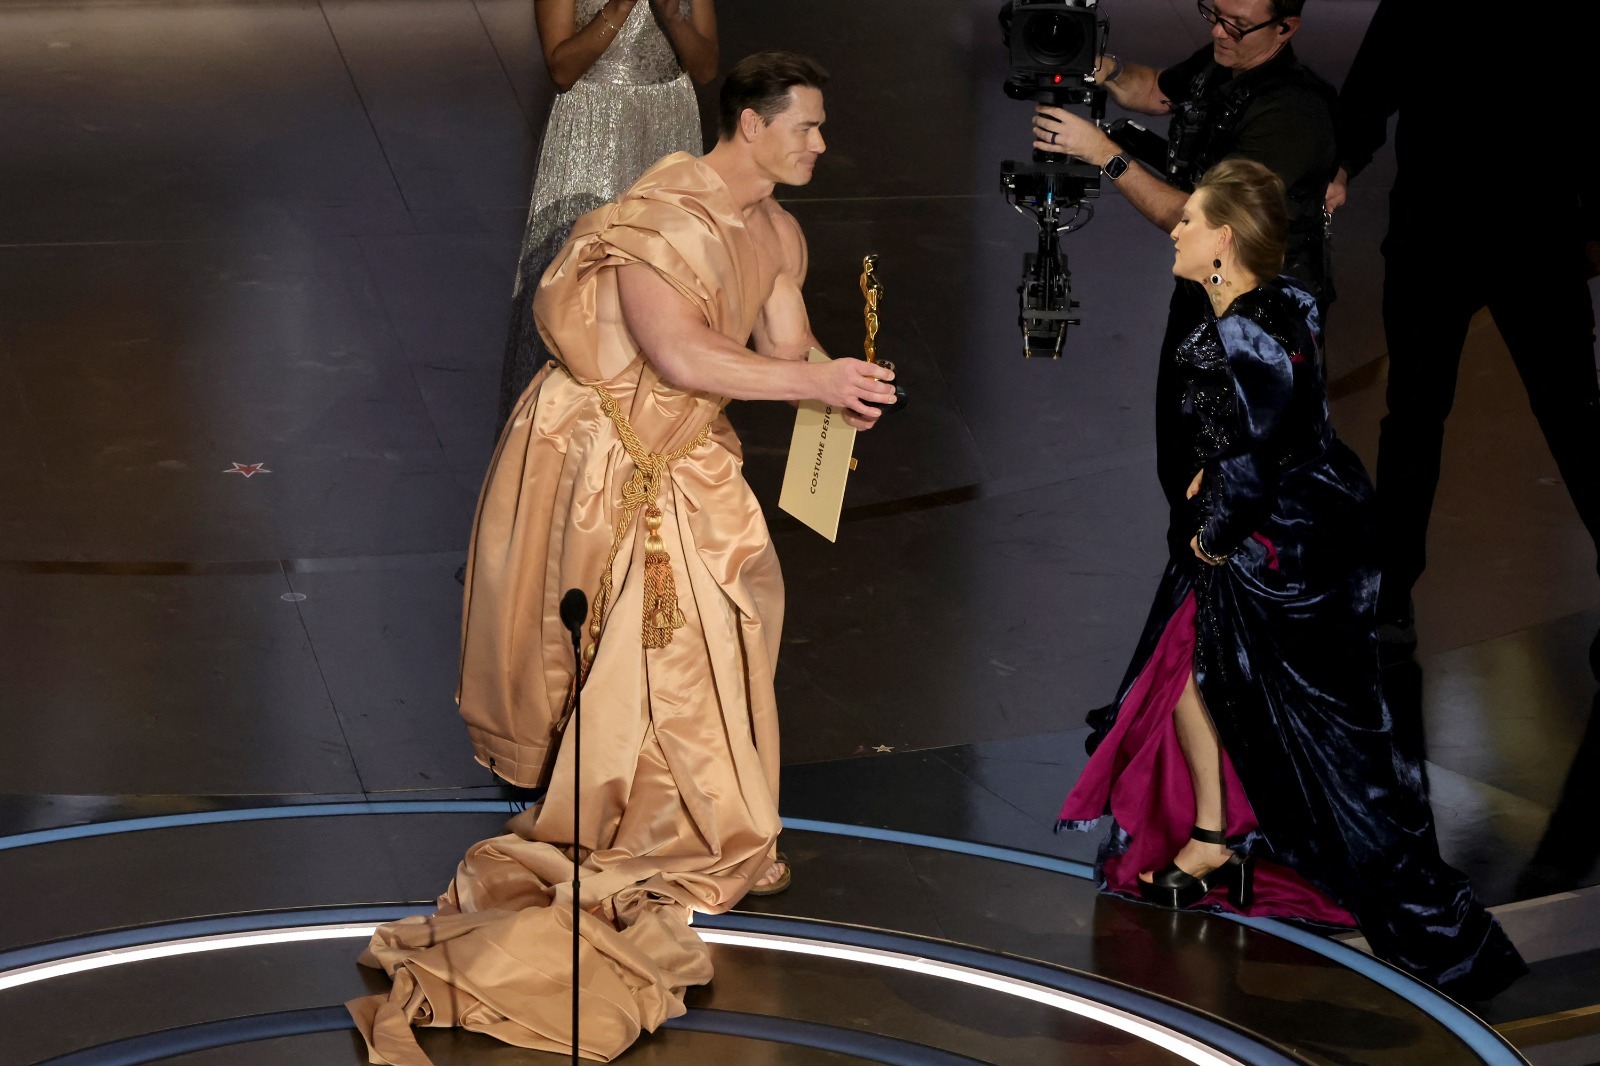 El traje que llevó puesto después de la broma del desnudo, el exluchador John Cena/Foto: AFP